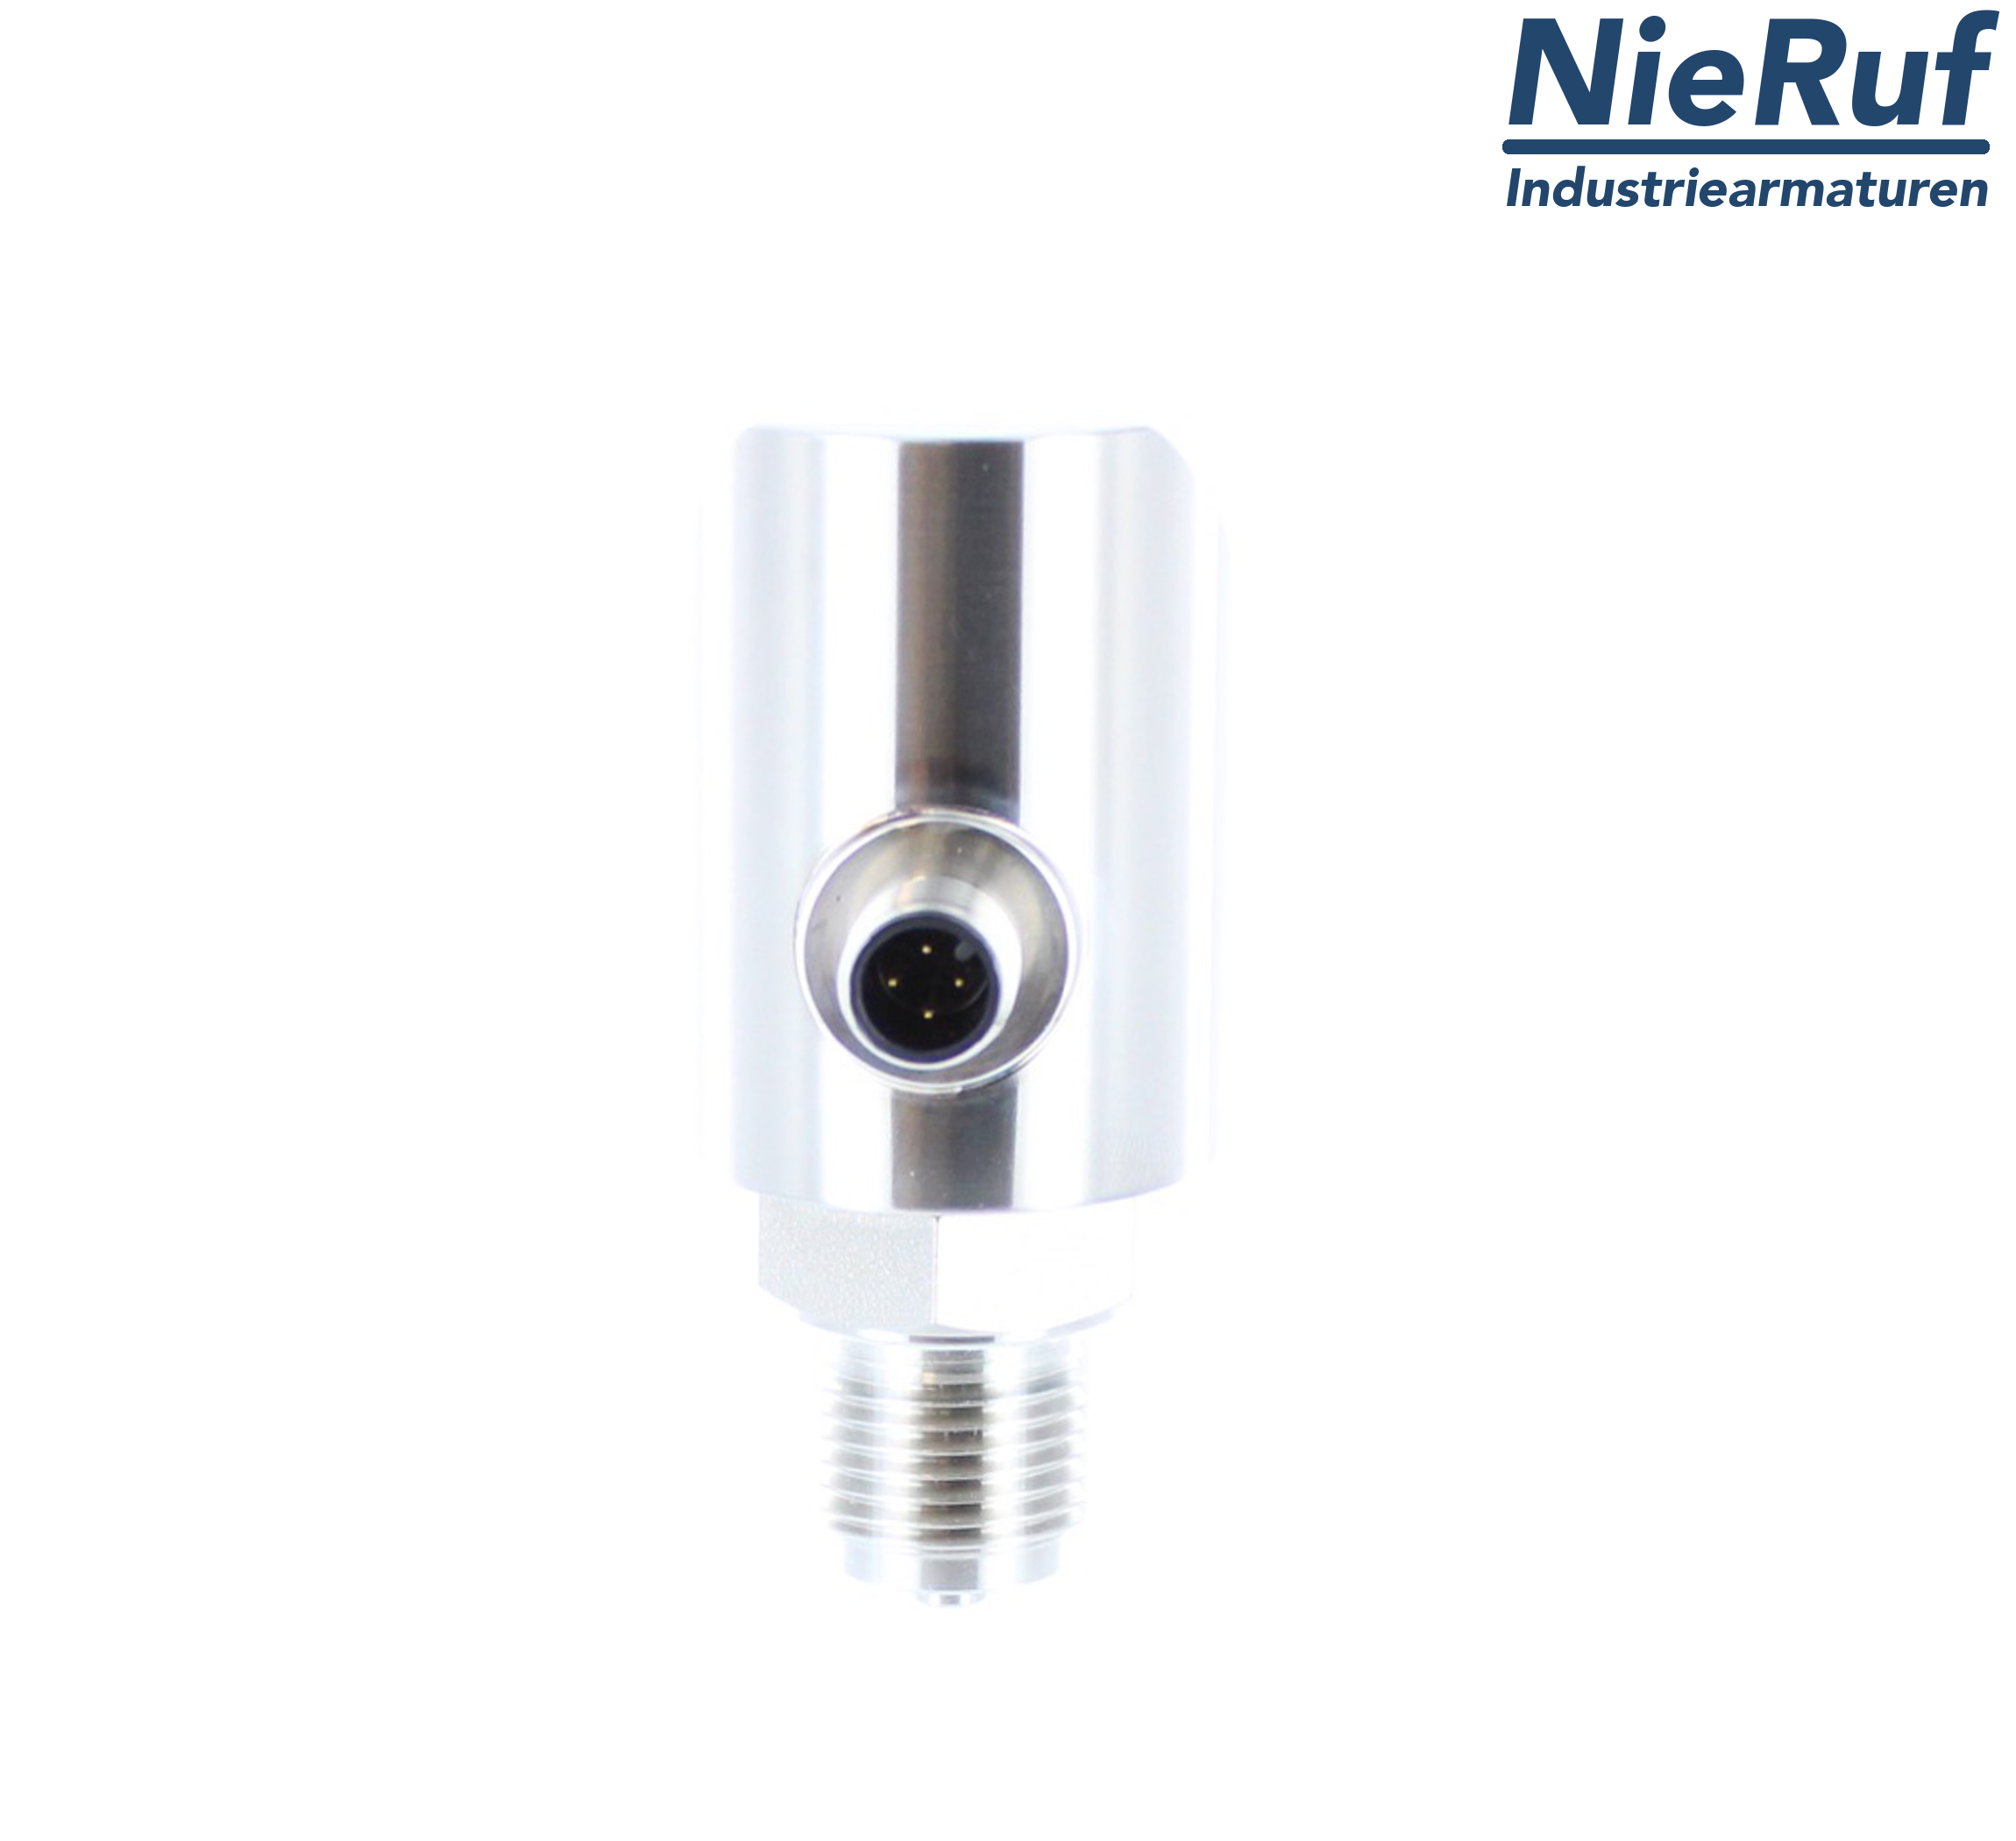 digital pressure sensor G 1/2" B 5-wire: 2xPNP, 1x4 - 20mA FPM 0,0 - 320,0 bar